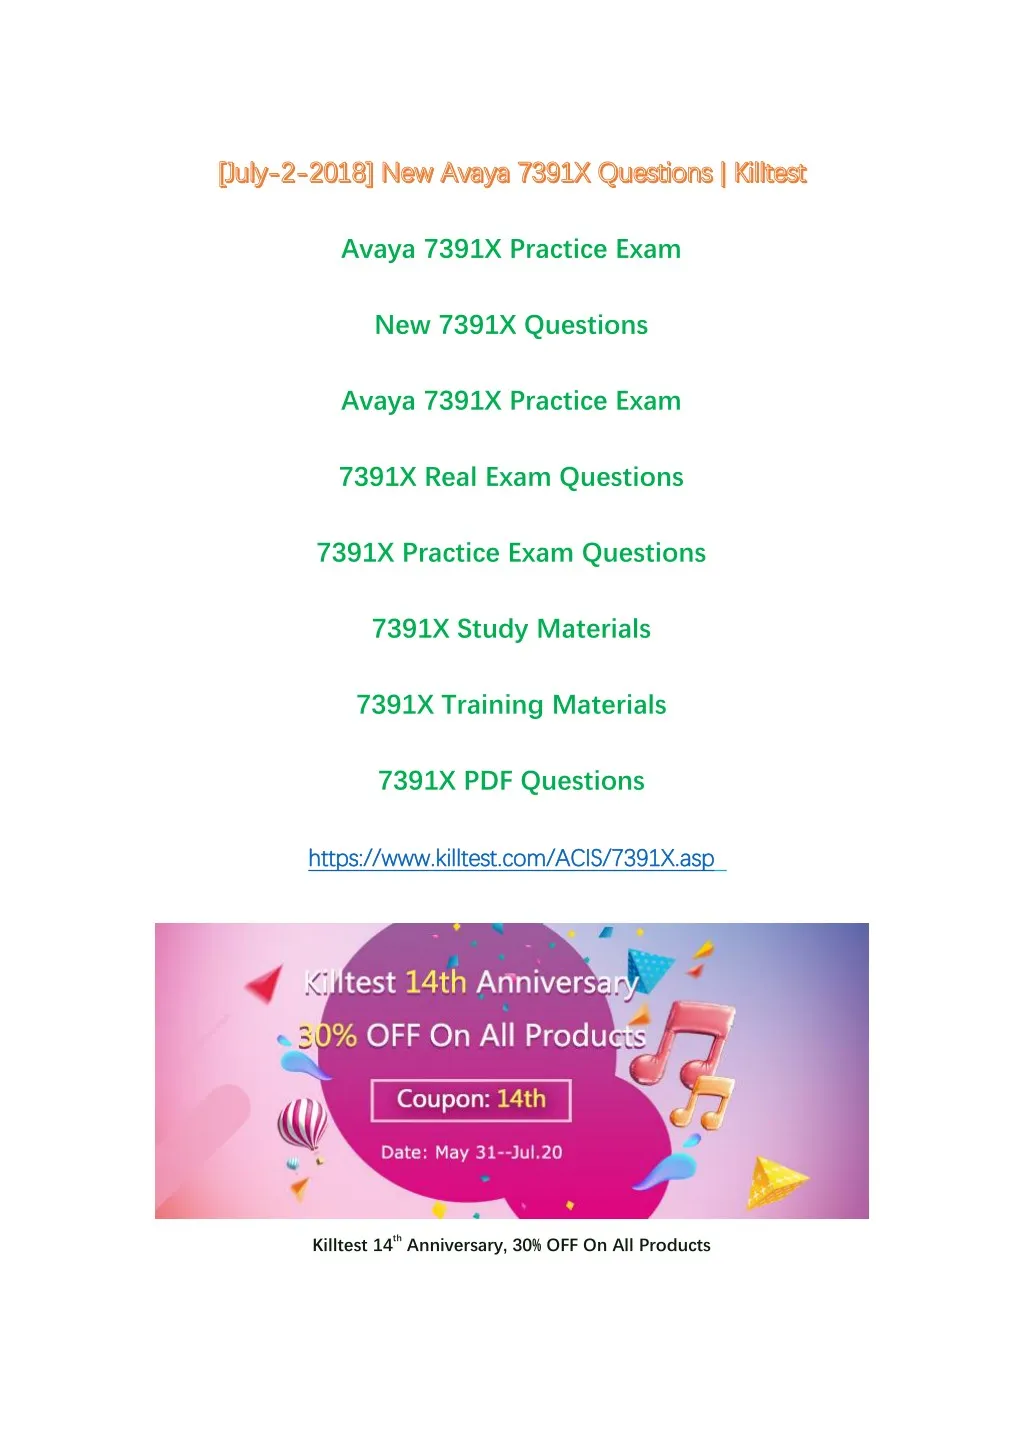 avaya 7391x practice exam